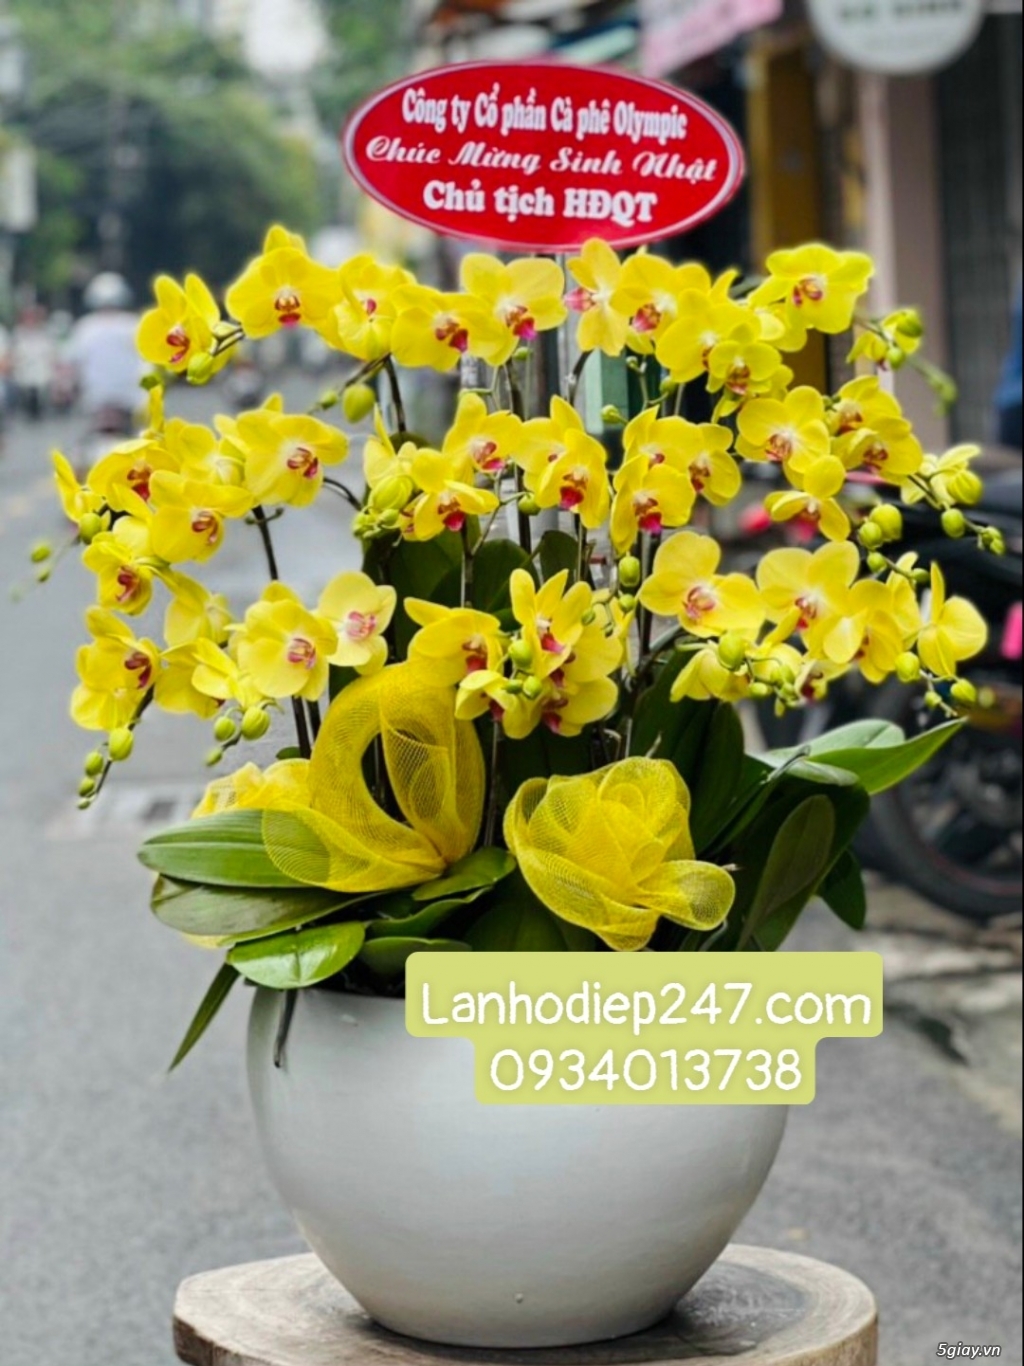 Shop hoa tươi Lan Hồ Điệp 247 tại Quy Nhơn 0934013738 - 13